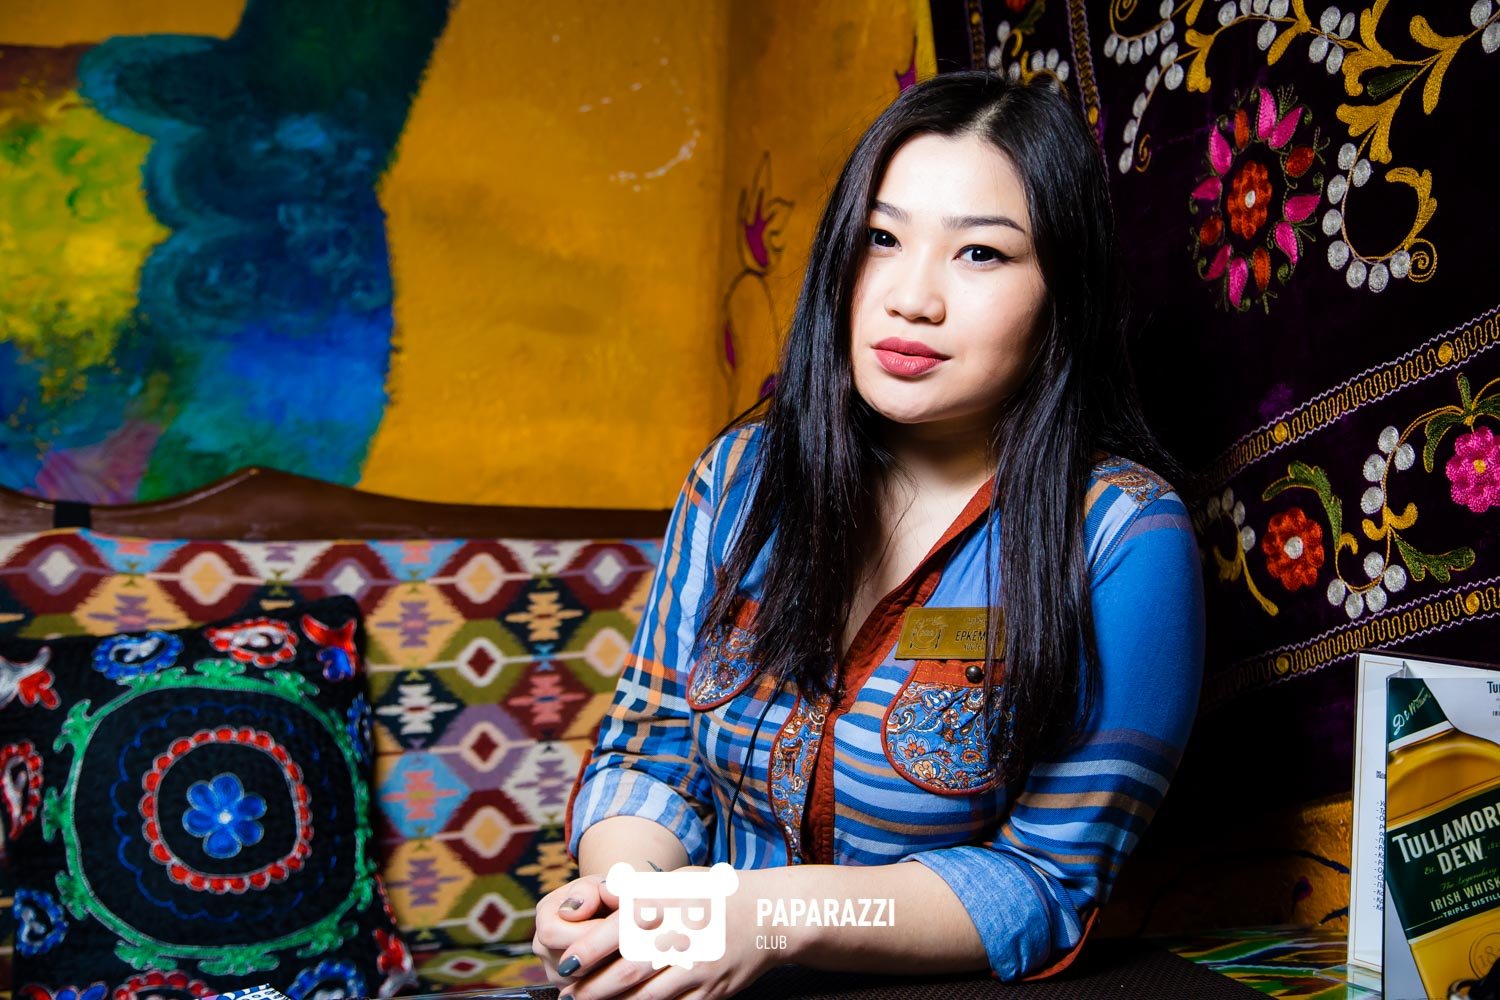 Интеллектуальная Проститутка Узбеки